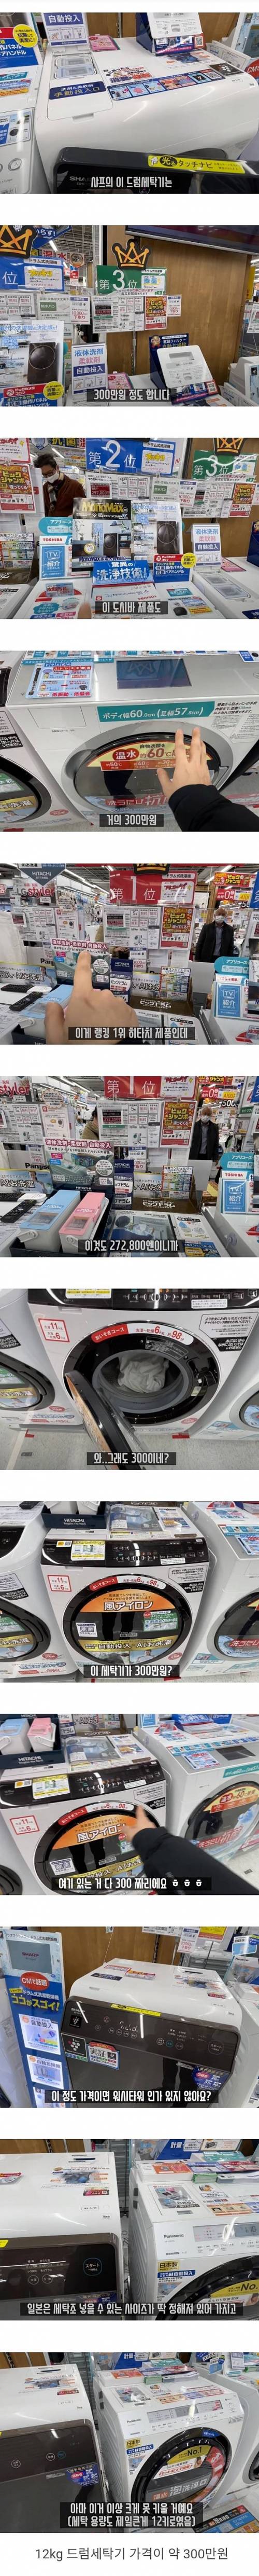 [스압] 왜국의 최신형 세탁기 가격.jpg